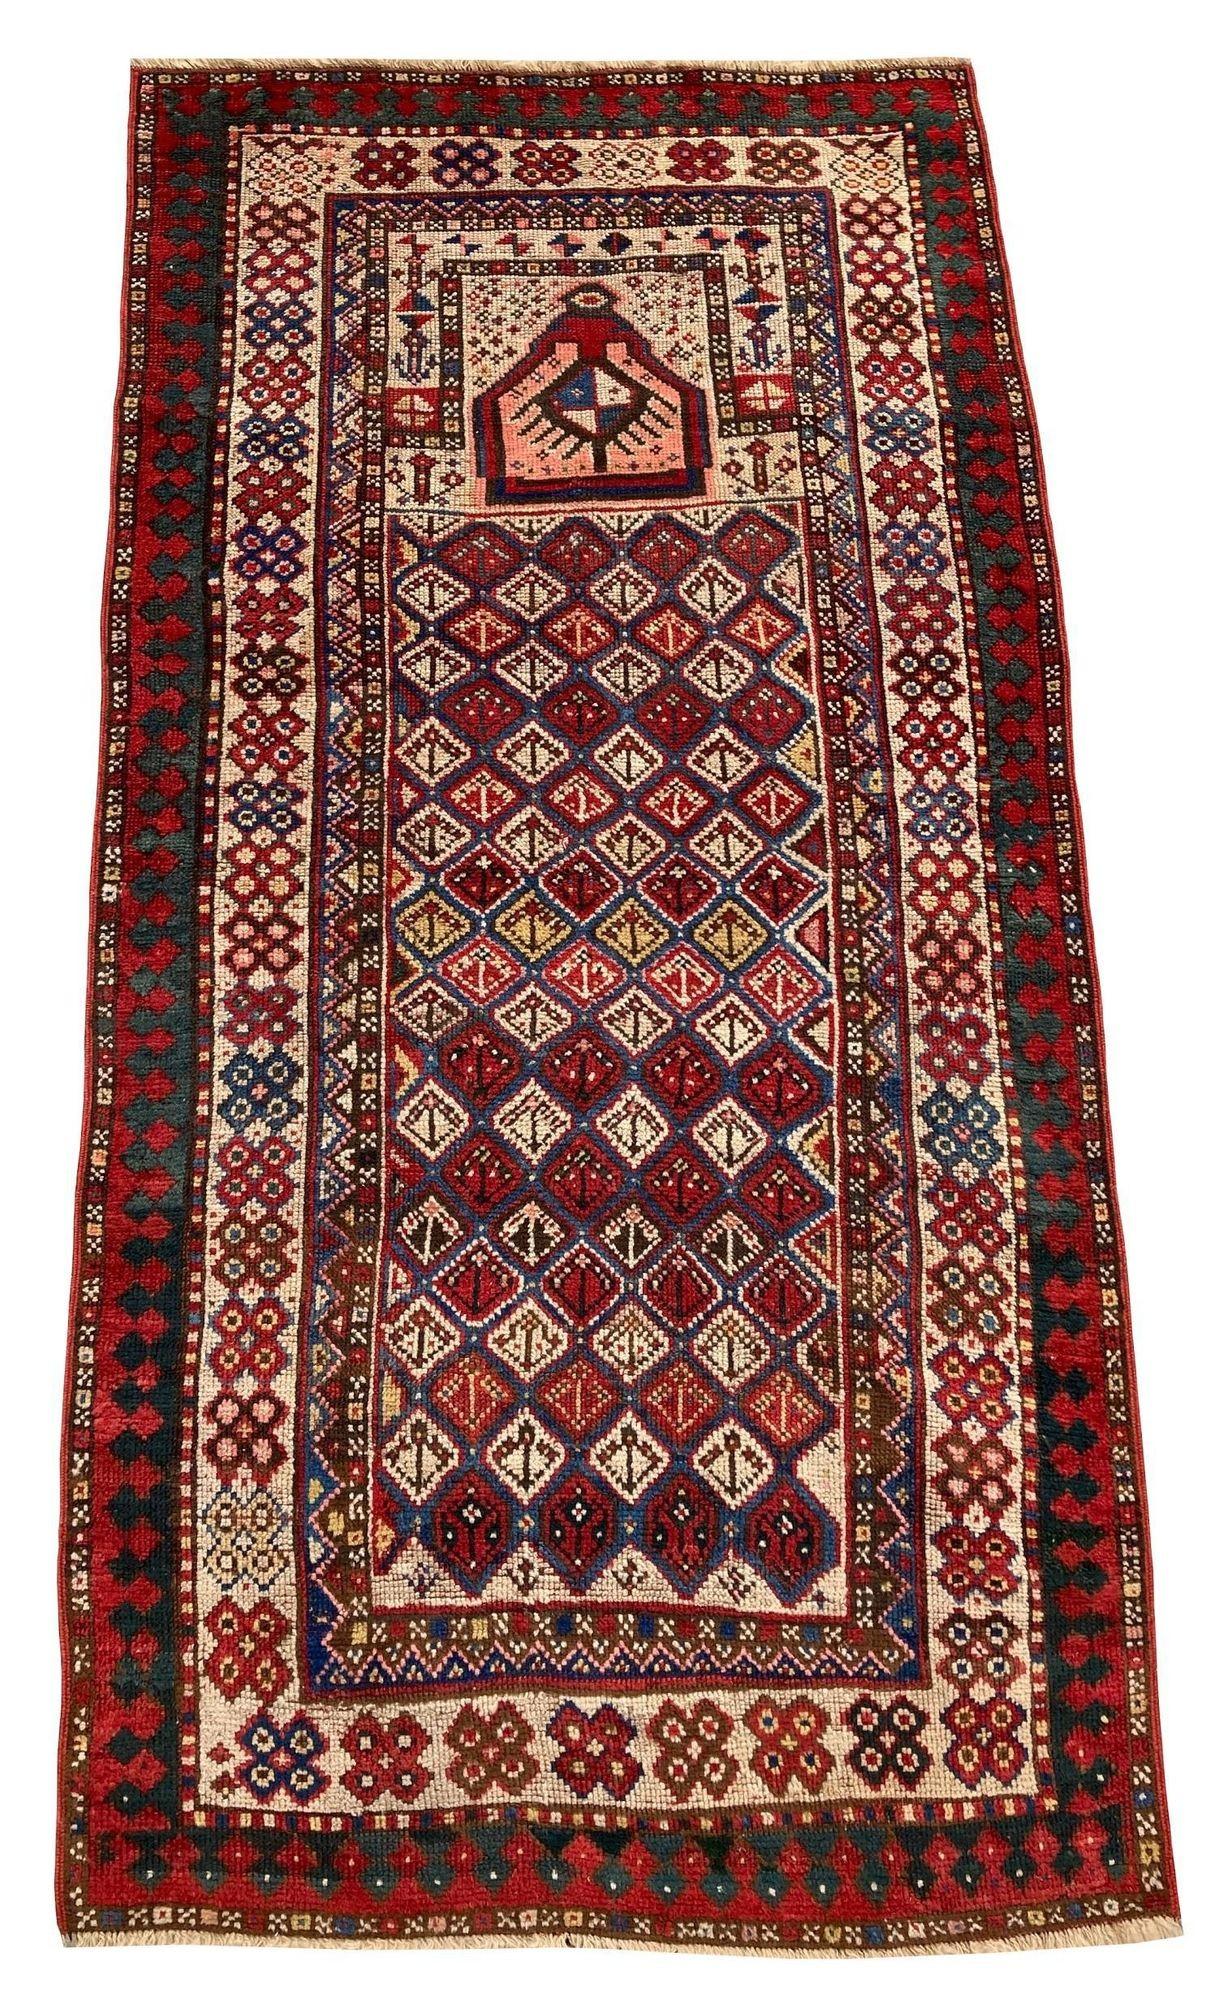 Un magnifique petit tapis Gendje ancien, tissé à la main dans les montagnes du Caucase, dans l'Azerbaïdjan actuel, vers 1890. Il présente un motif inhabituel de tapis de prière sur un champ de losanges multicolores avec une bordure ivoire. Des